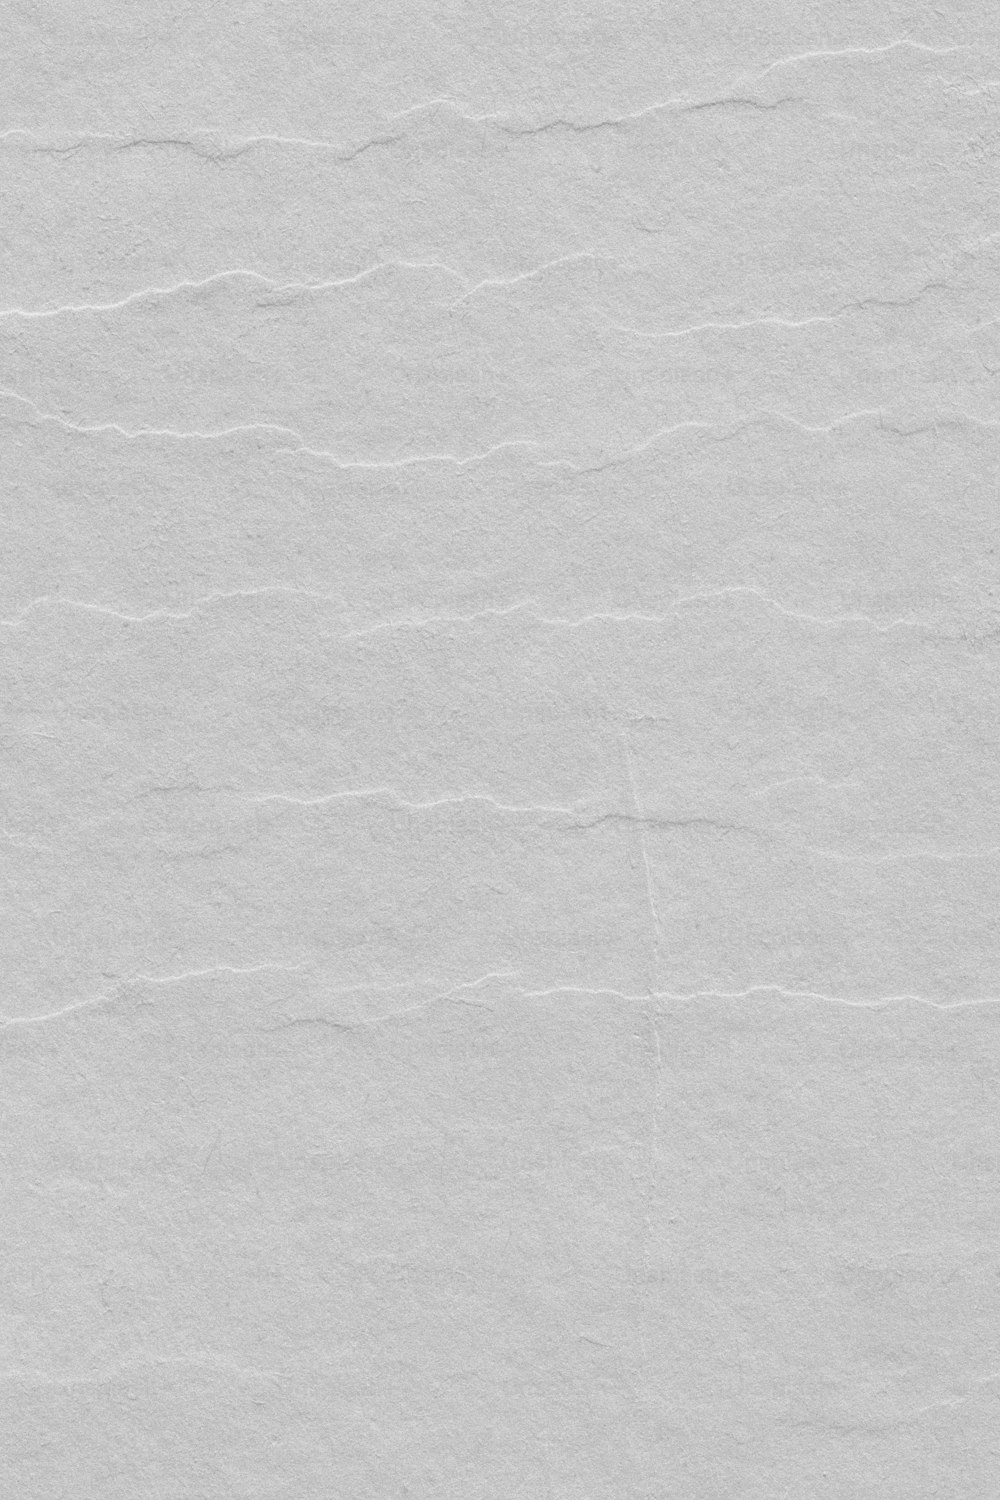 um pedaço de papel branco com algumas linhas